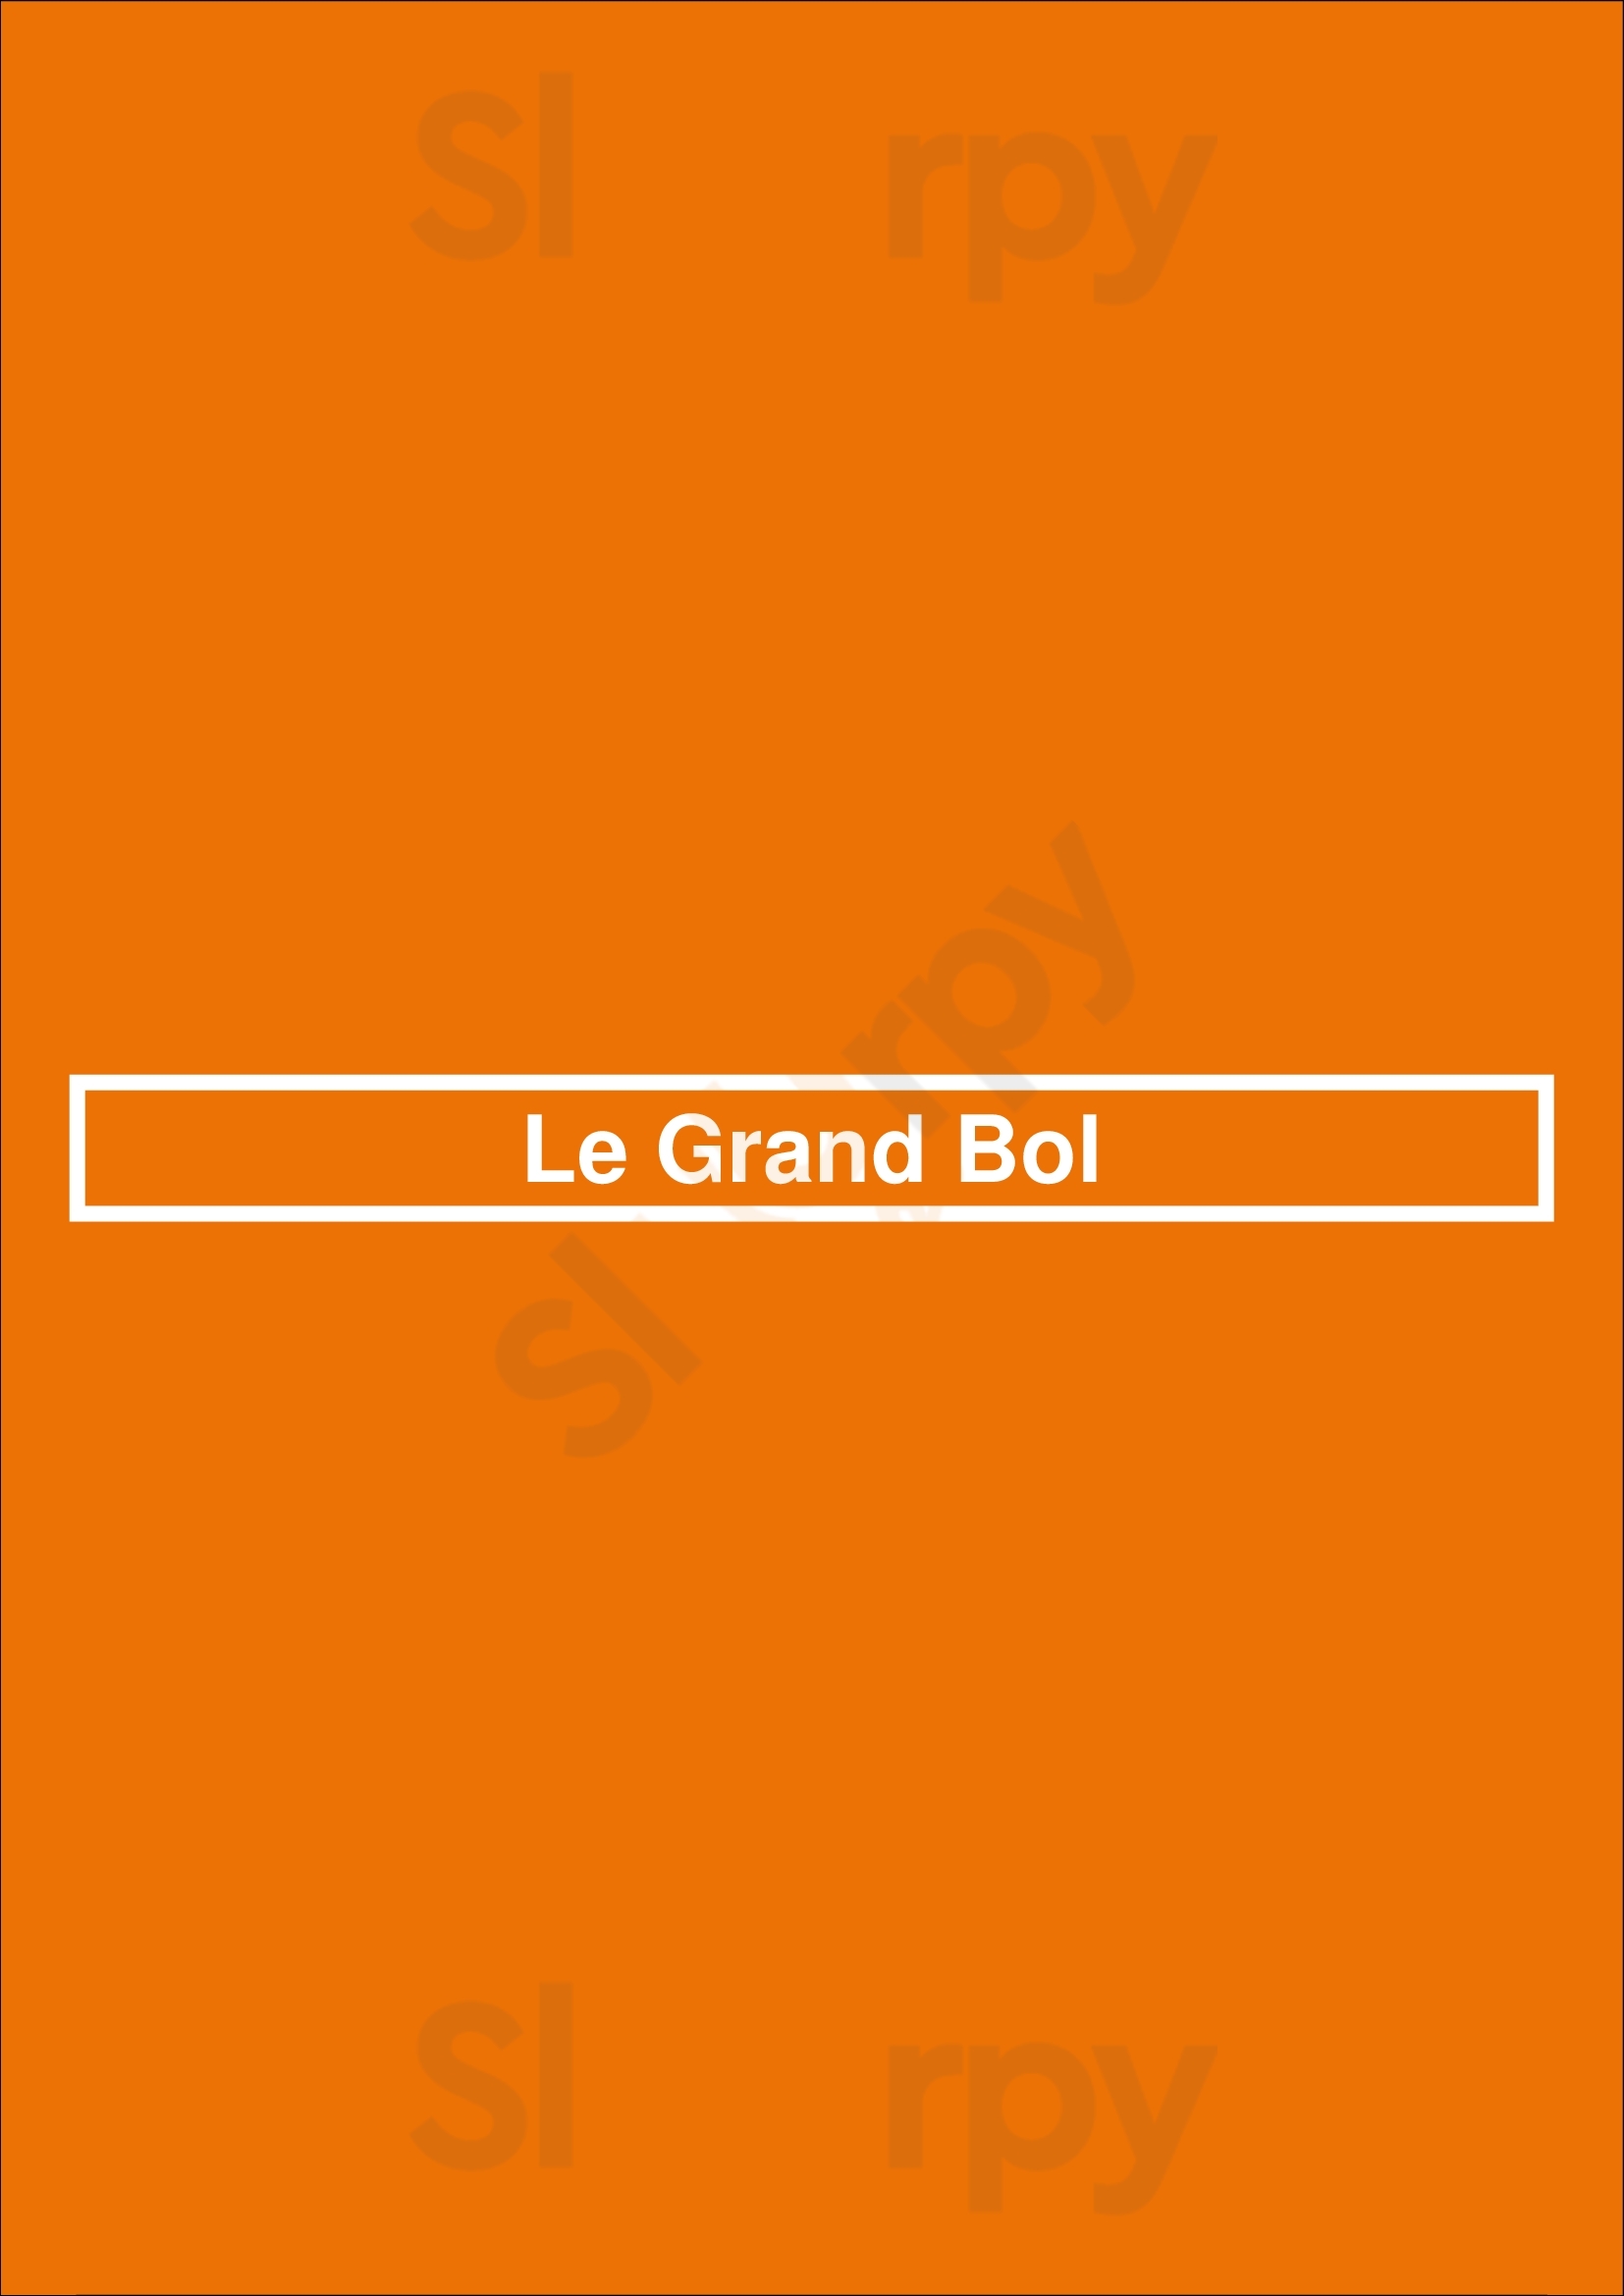 Le Grand Bol Paris Menu - 1